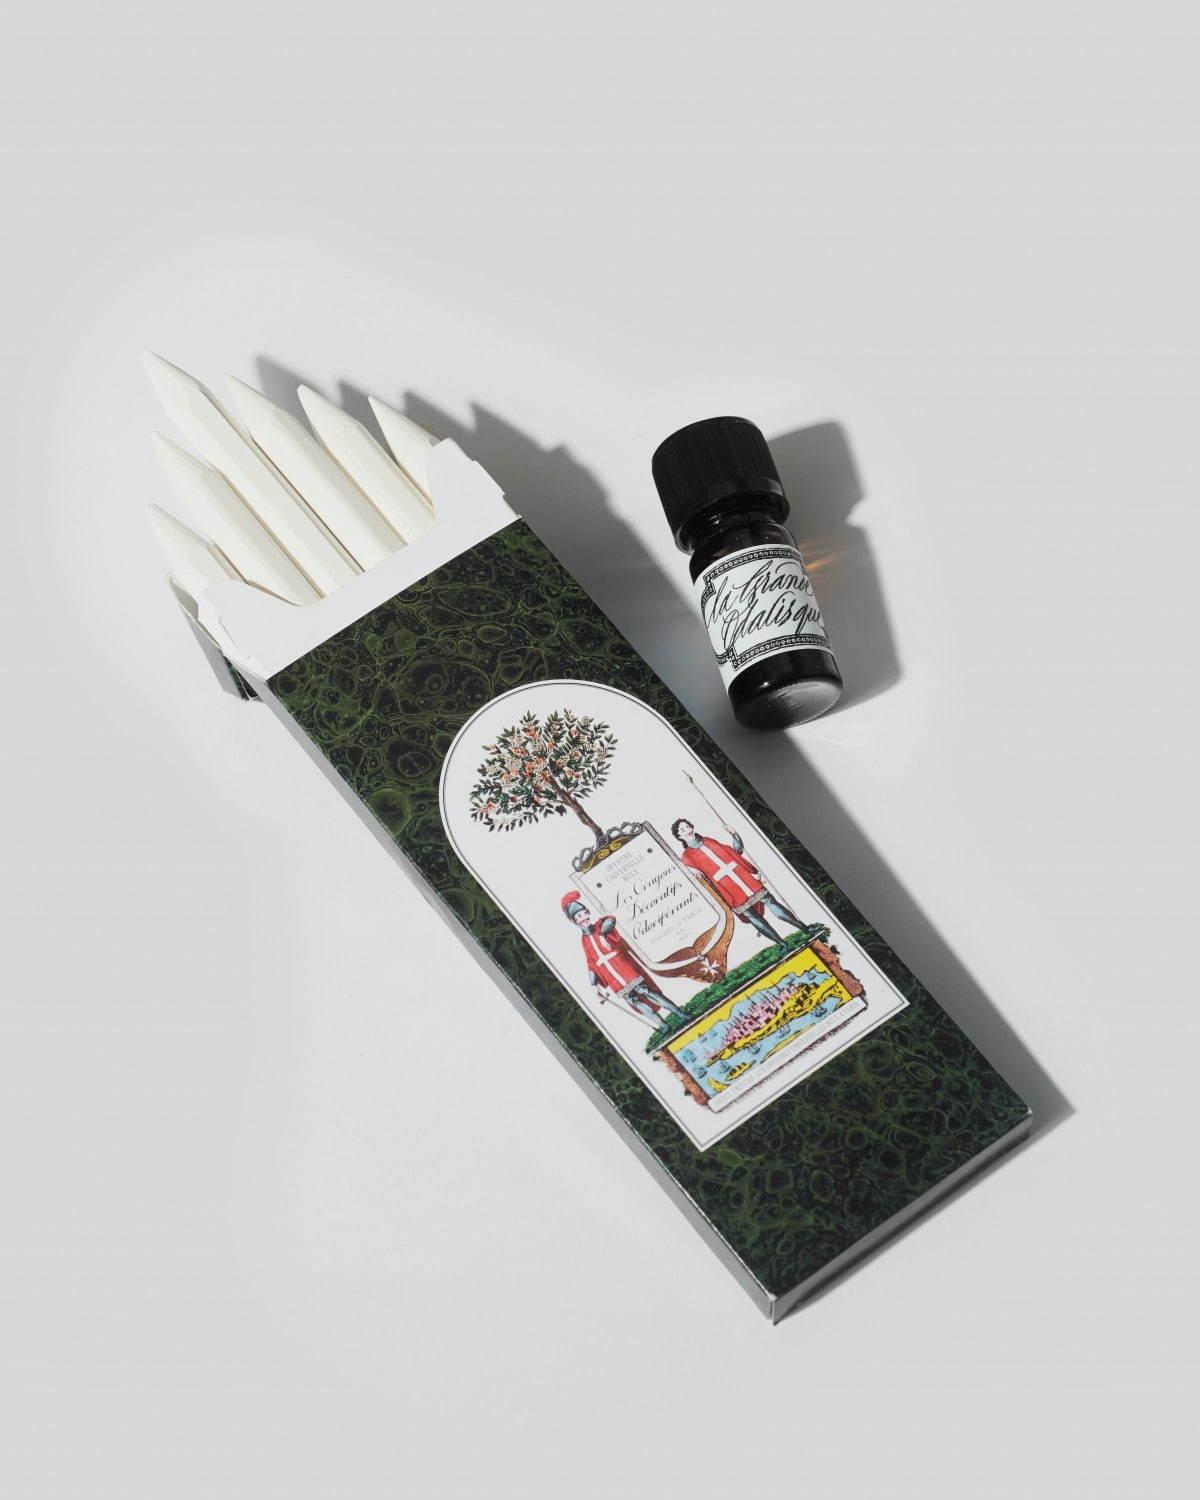 オフィシーヌ・ユニヴェルセル・ビュリー“鉛筆型”ディフューザー、好みの香りを染み込ませて コピー